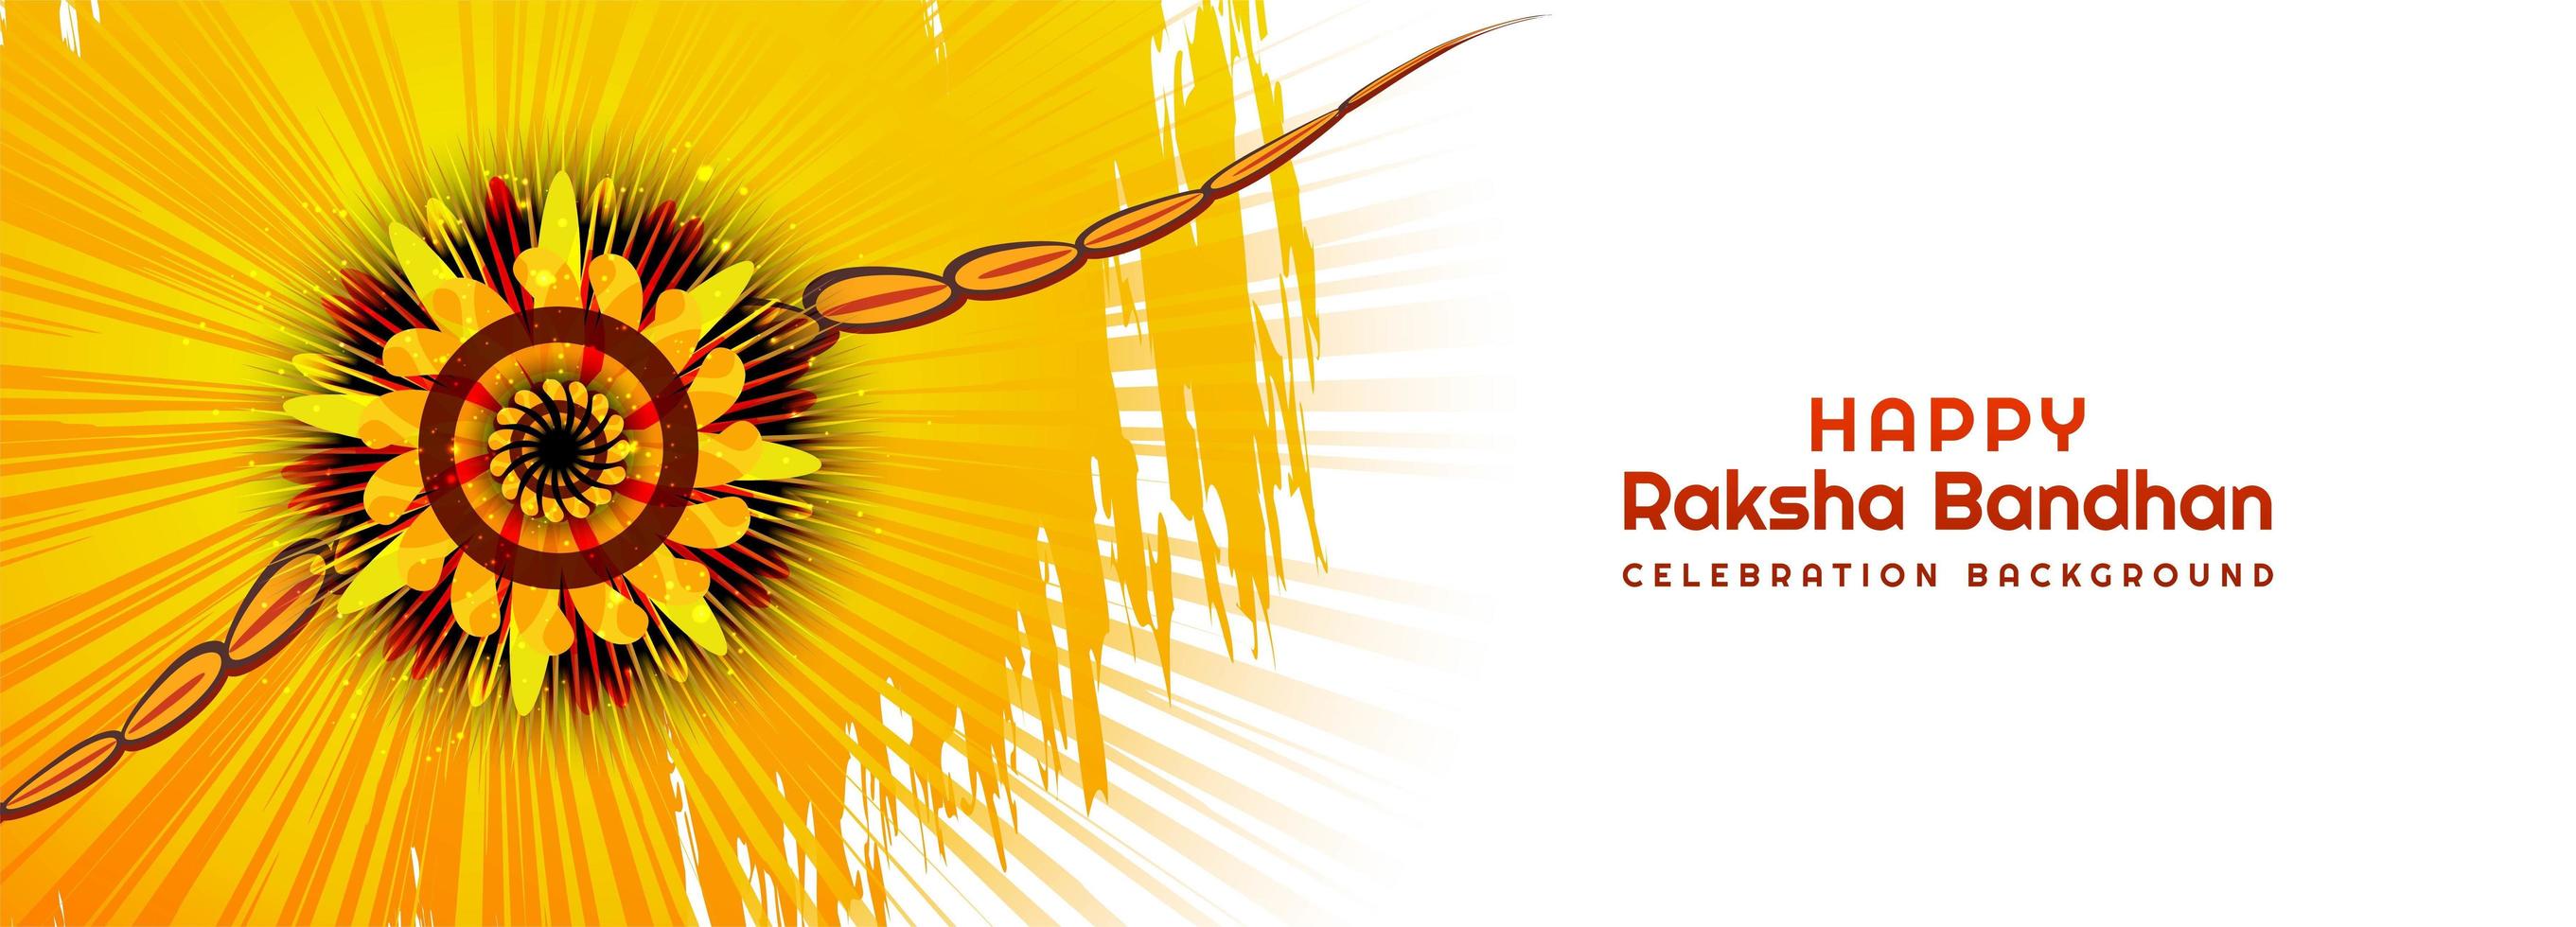 diseño de banner de festival hindú raksha bandhan vector